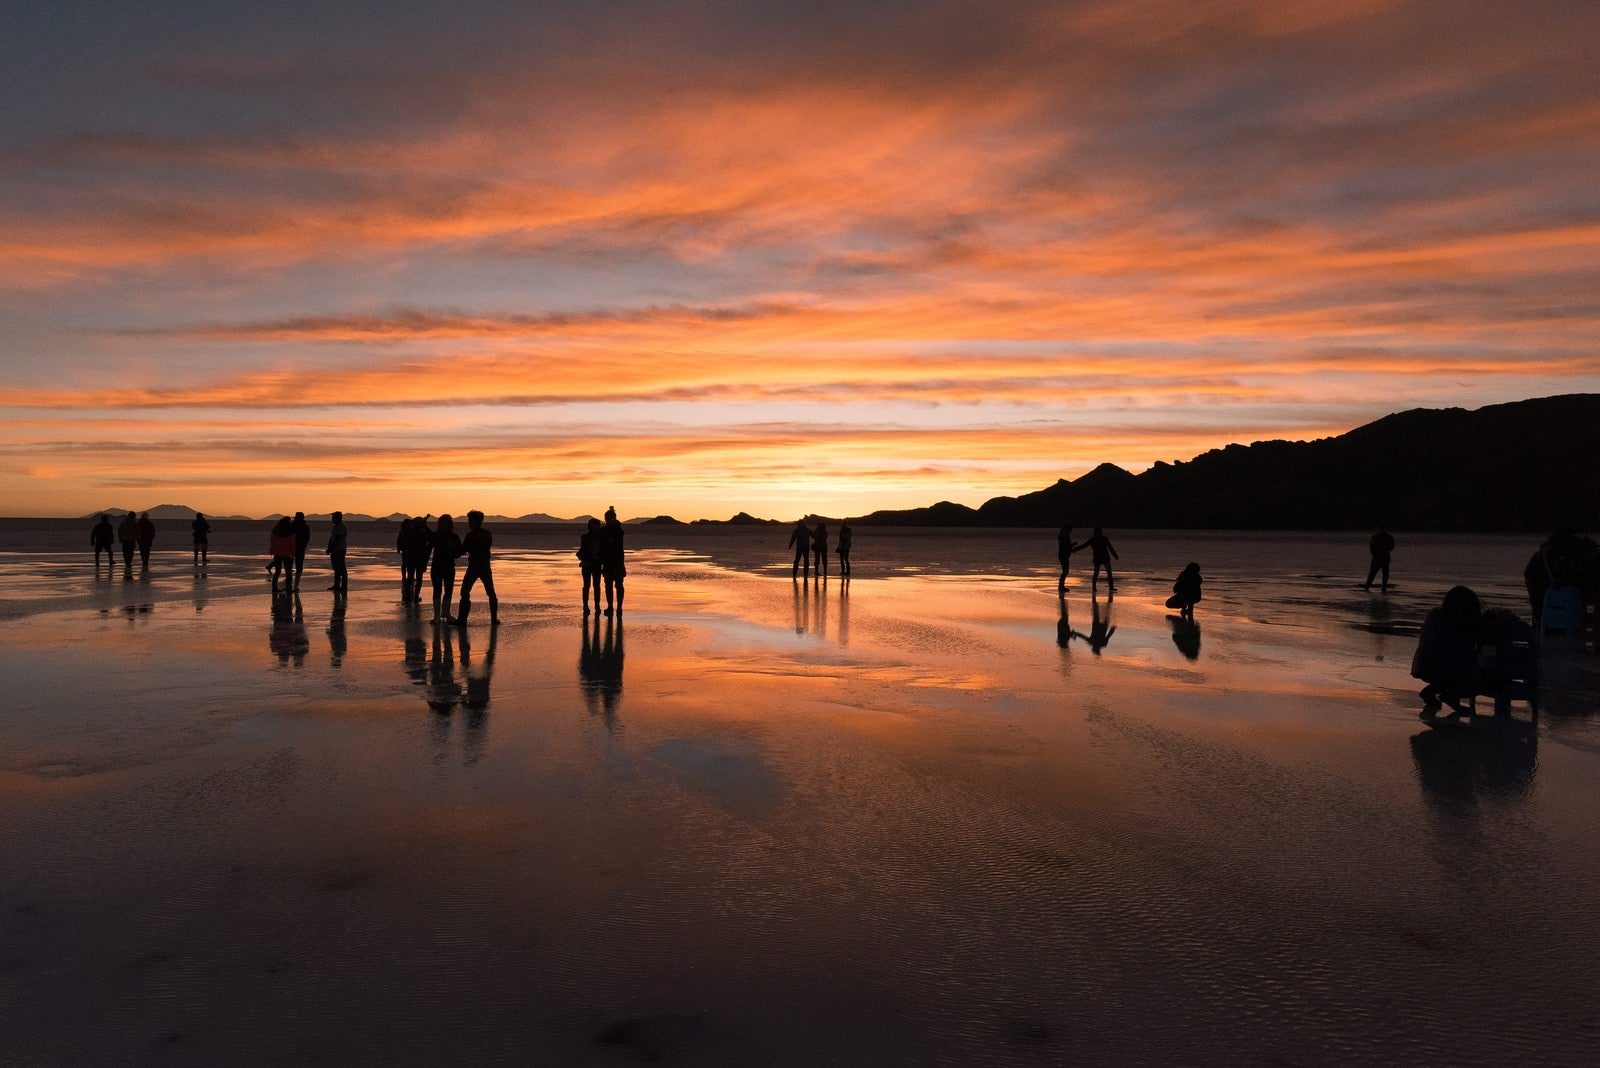 「美しい夕暮れのウユニ塩湖と観光客のシルエット」の写真